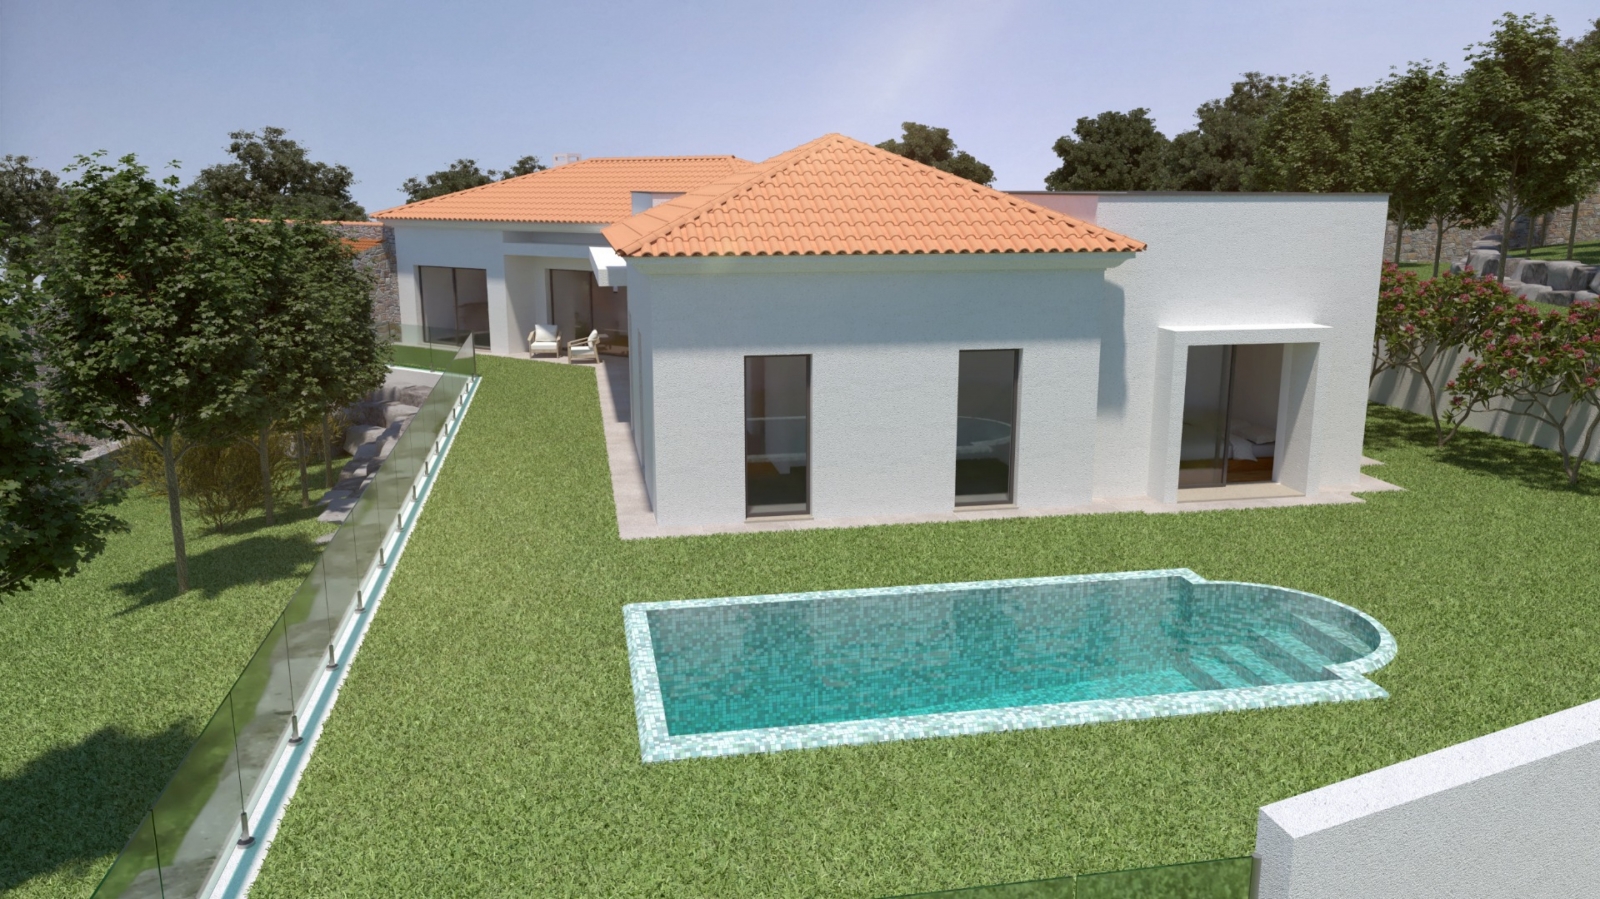 Terreno para construção de moradia T3, para venda, em Silves, Algarve_200005